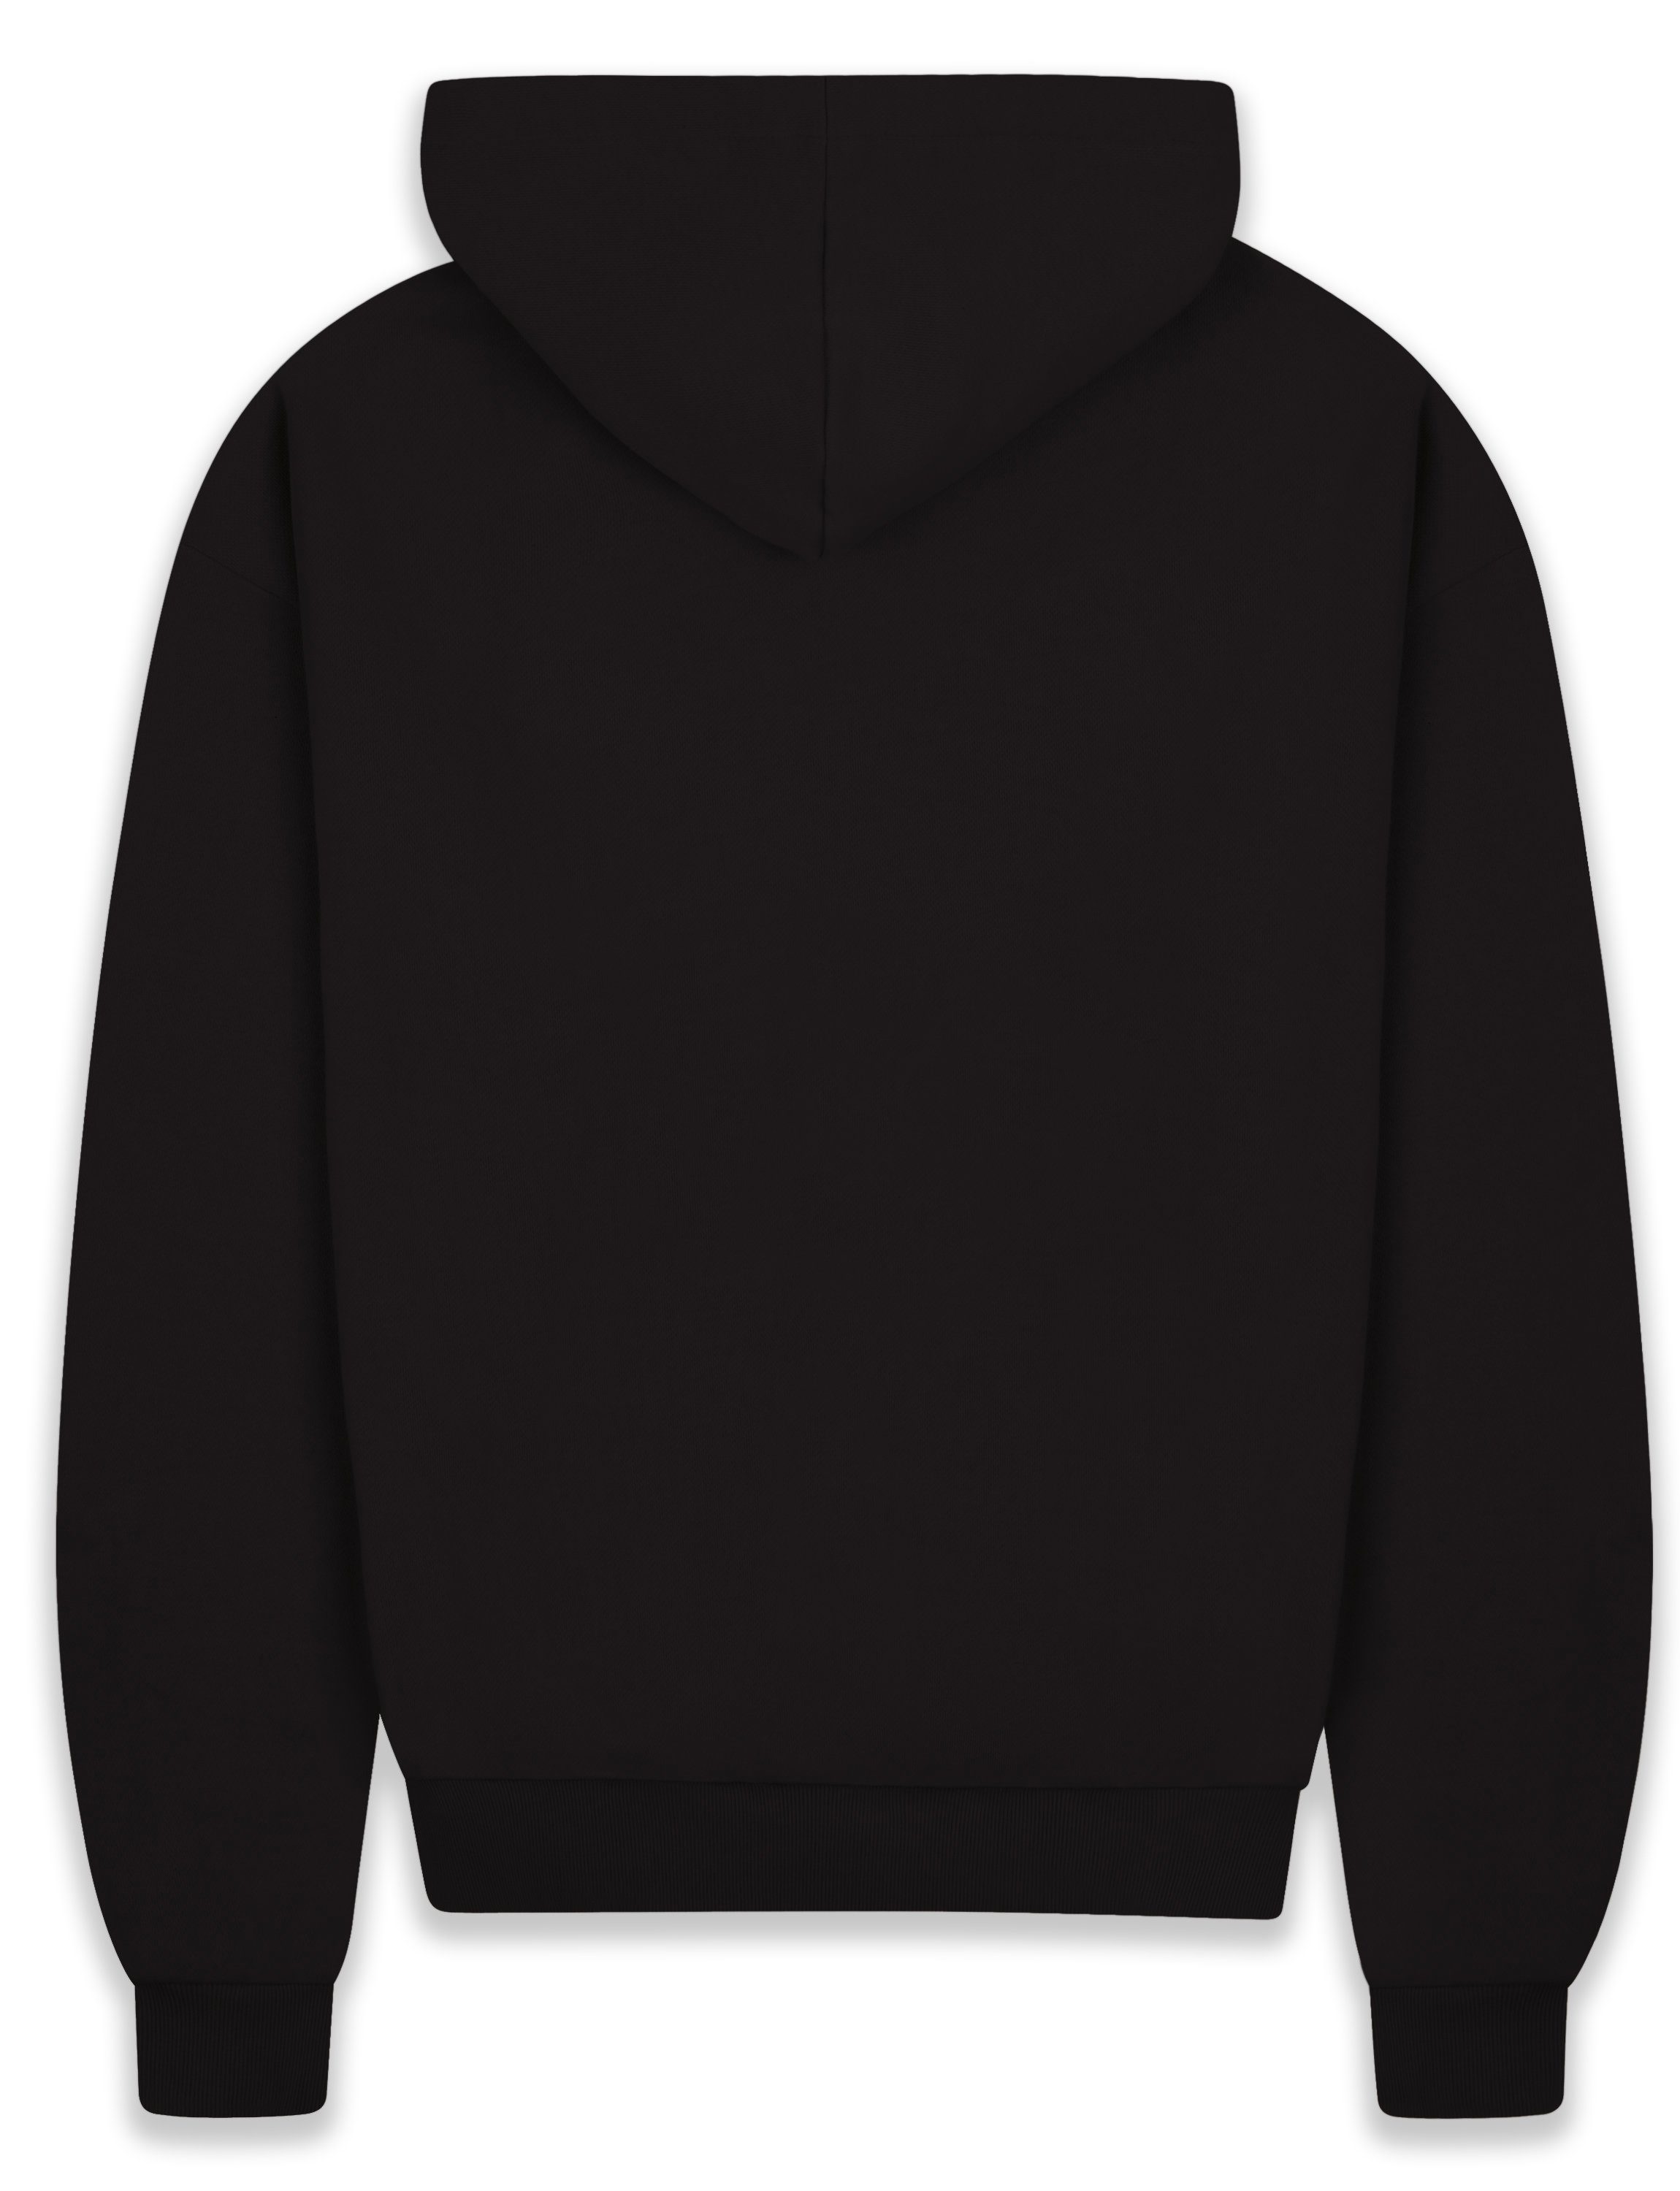 Black Kapuzen-Pullover Hoodie Heavy Sweater Hoodie Herren Dropsize Oversize BR-H-1 GSM Herren 430